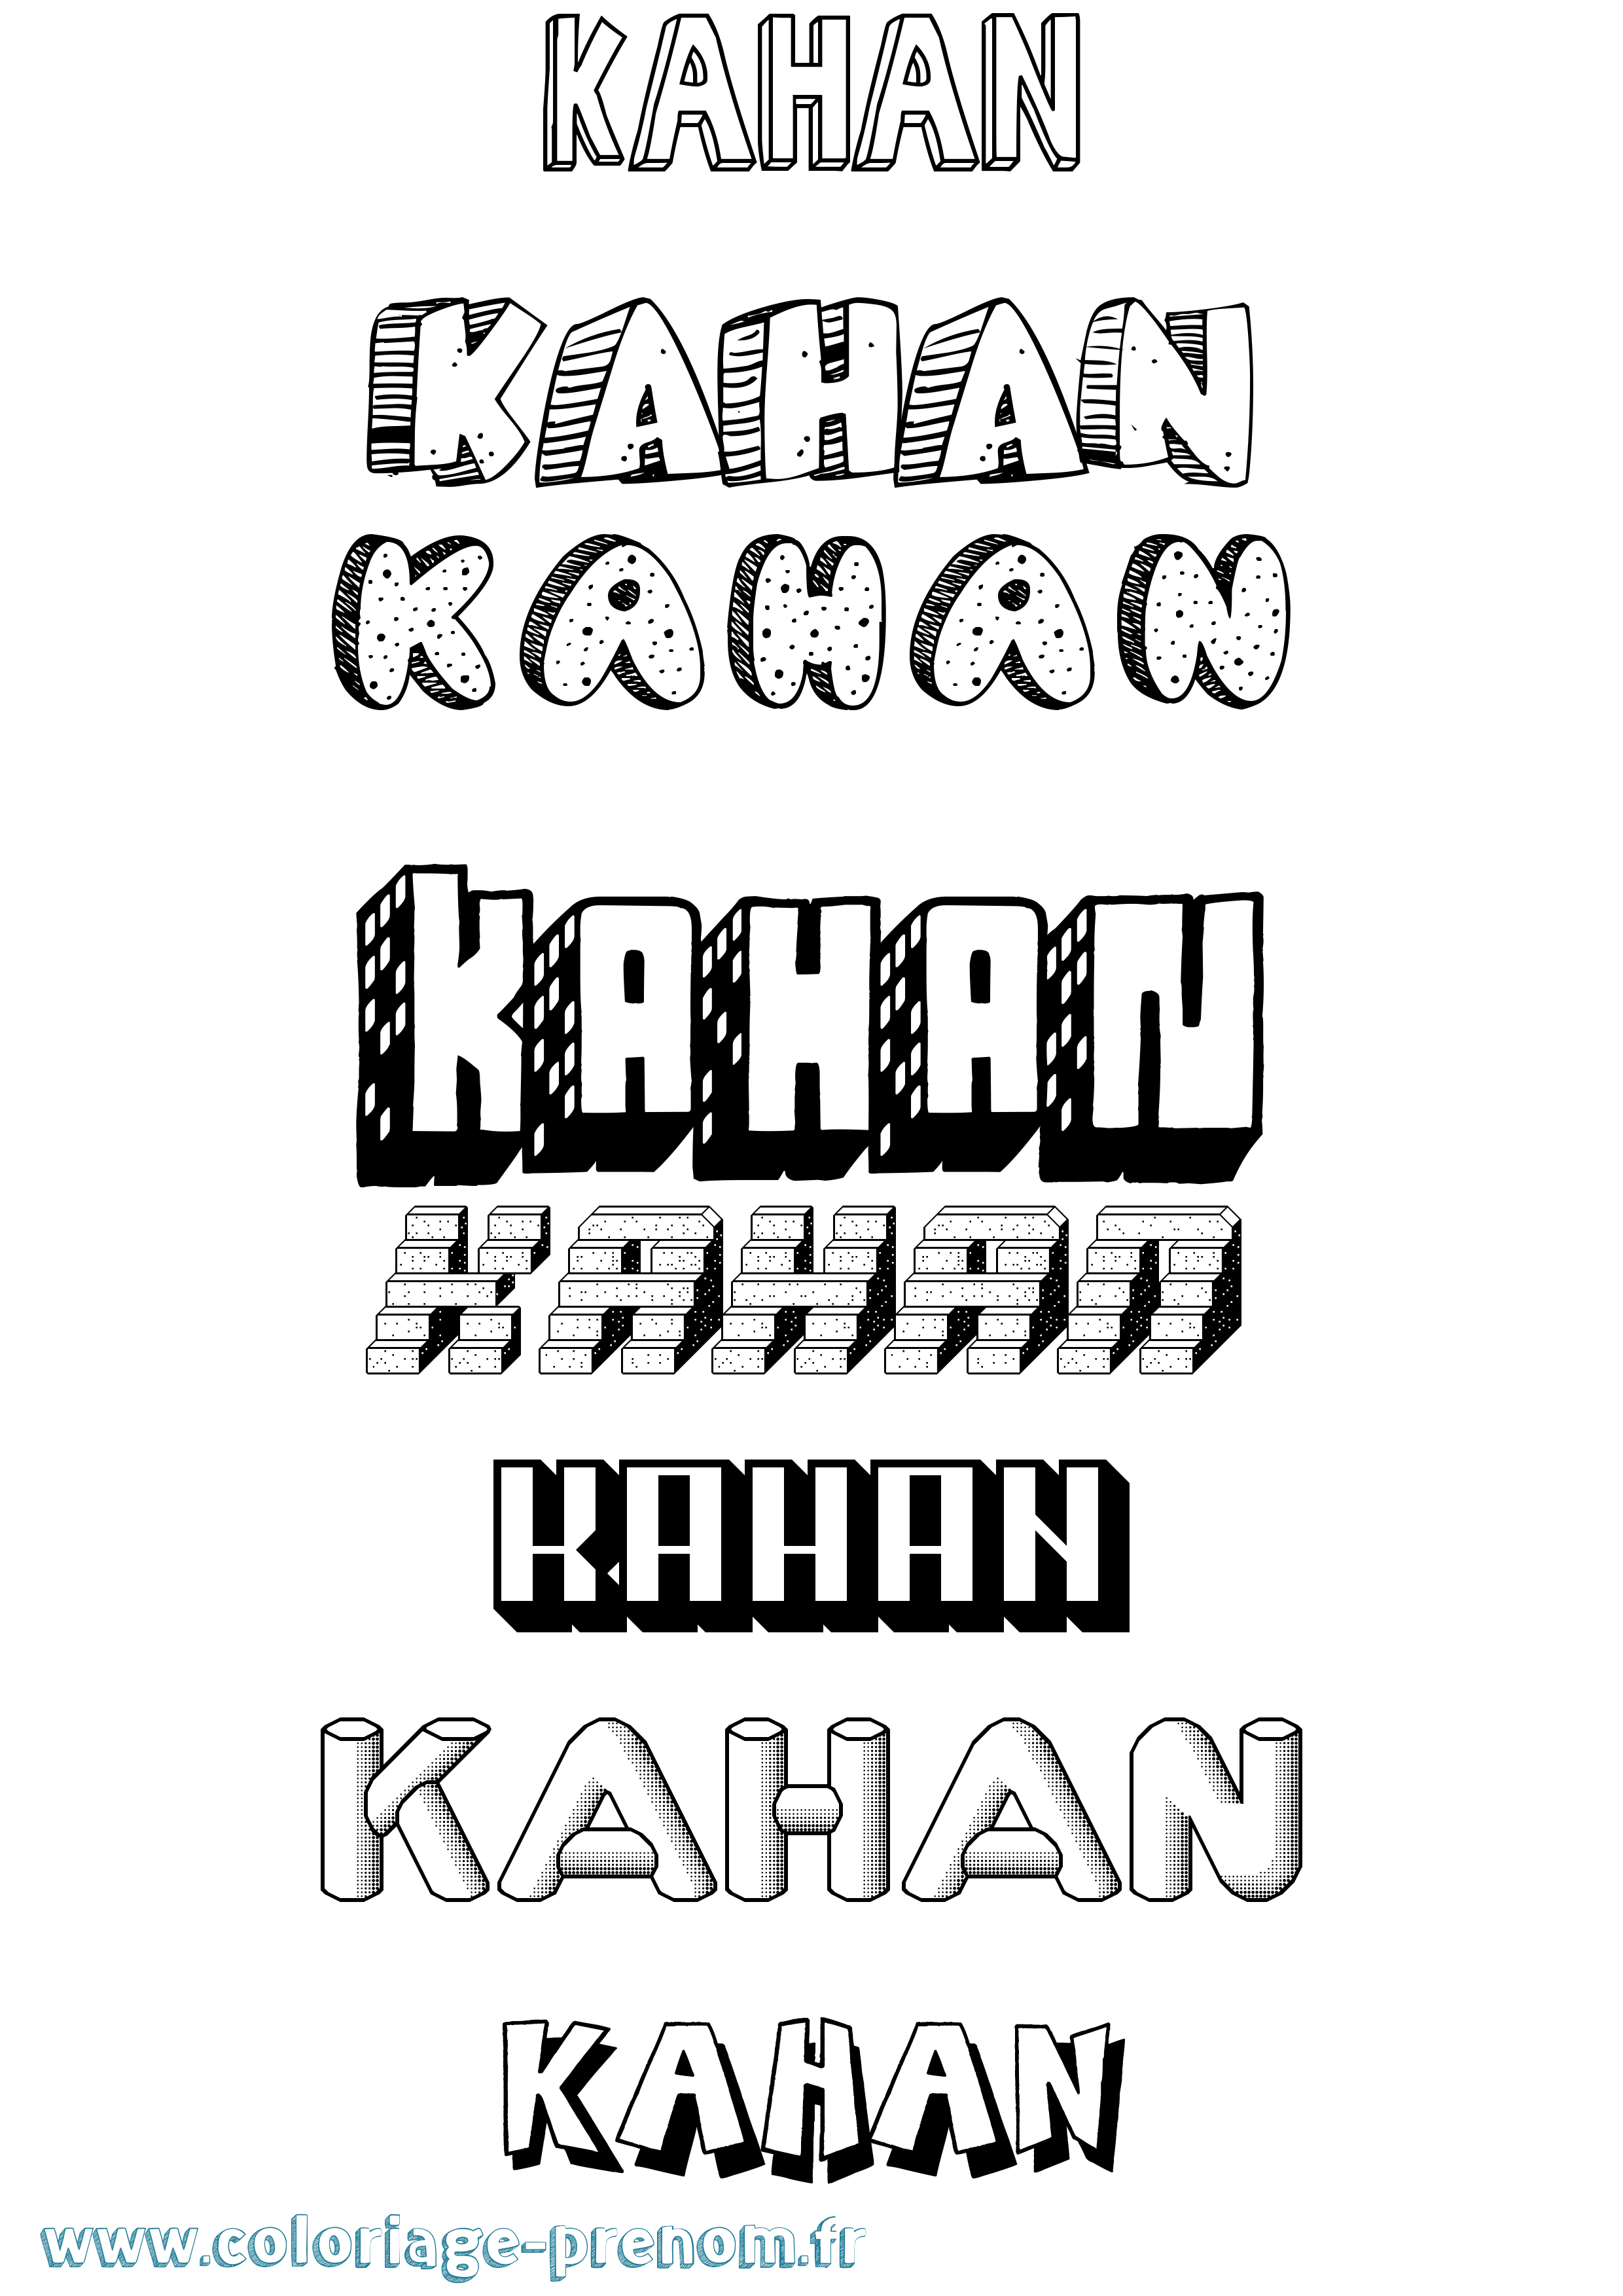 Coloriage prénom Kahan Effet 3D